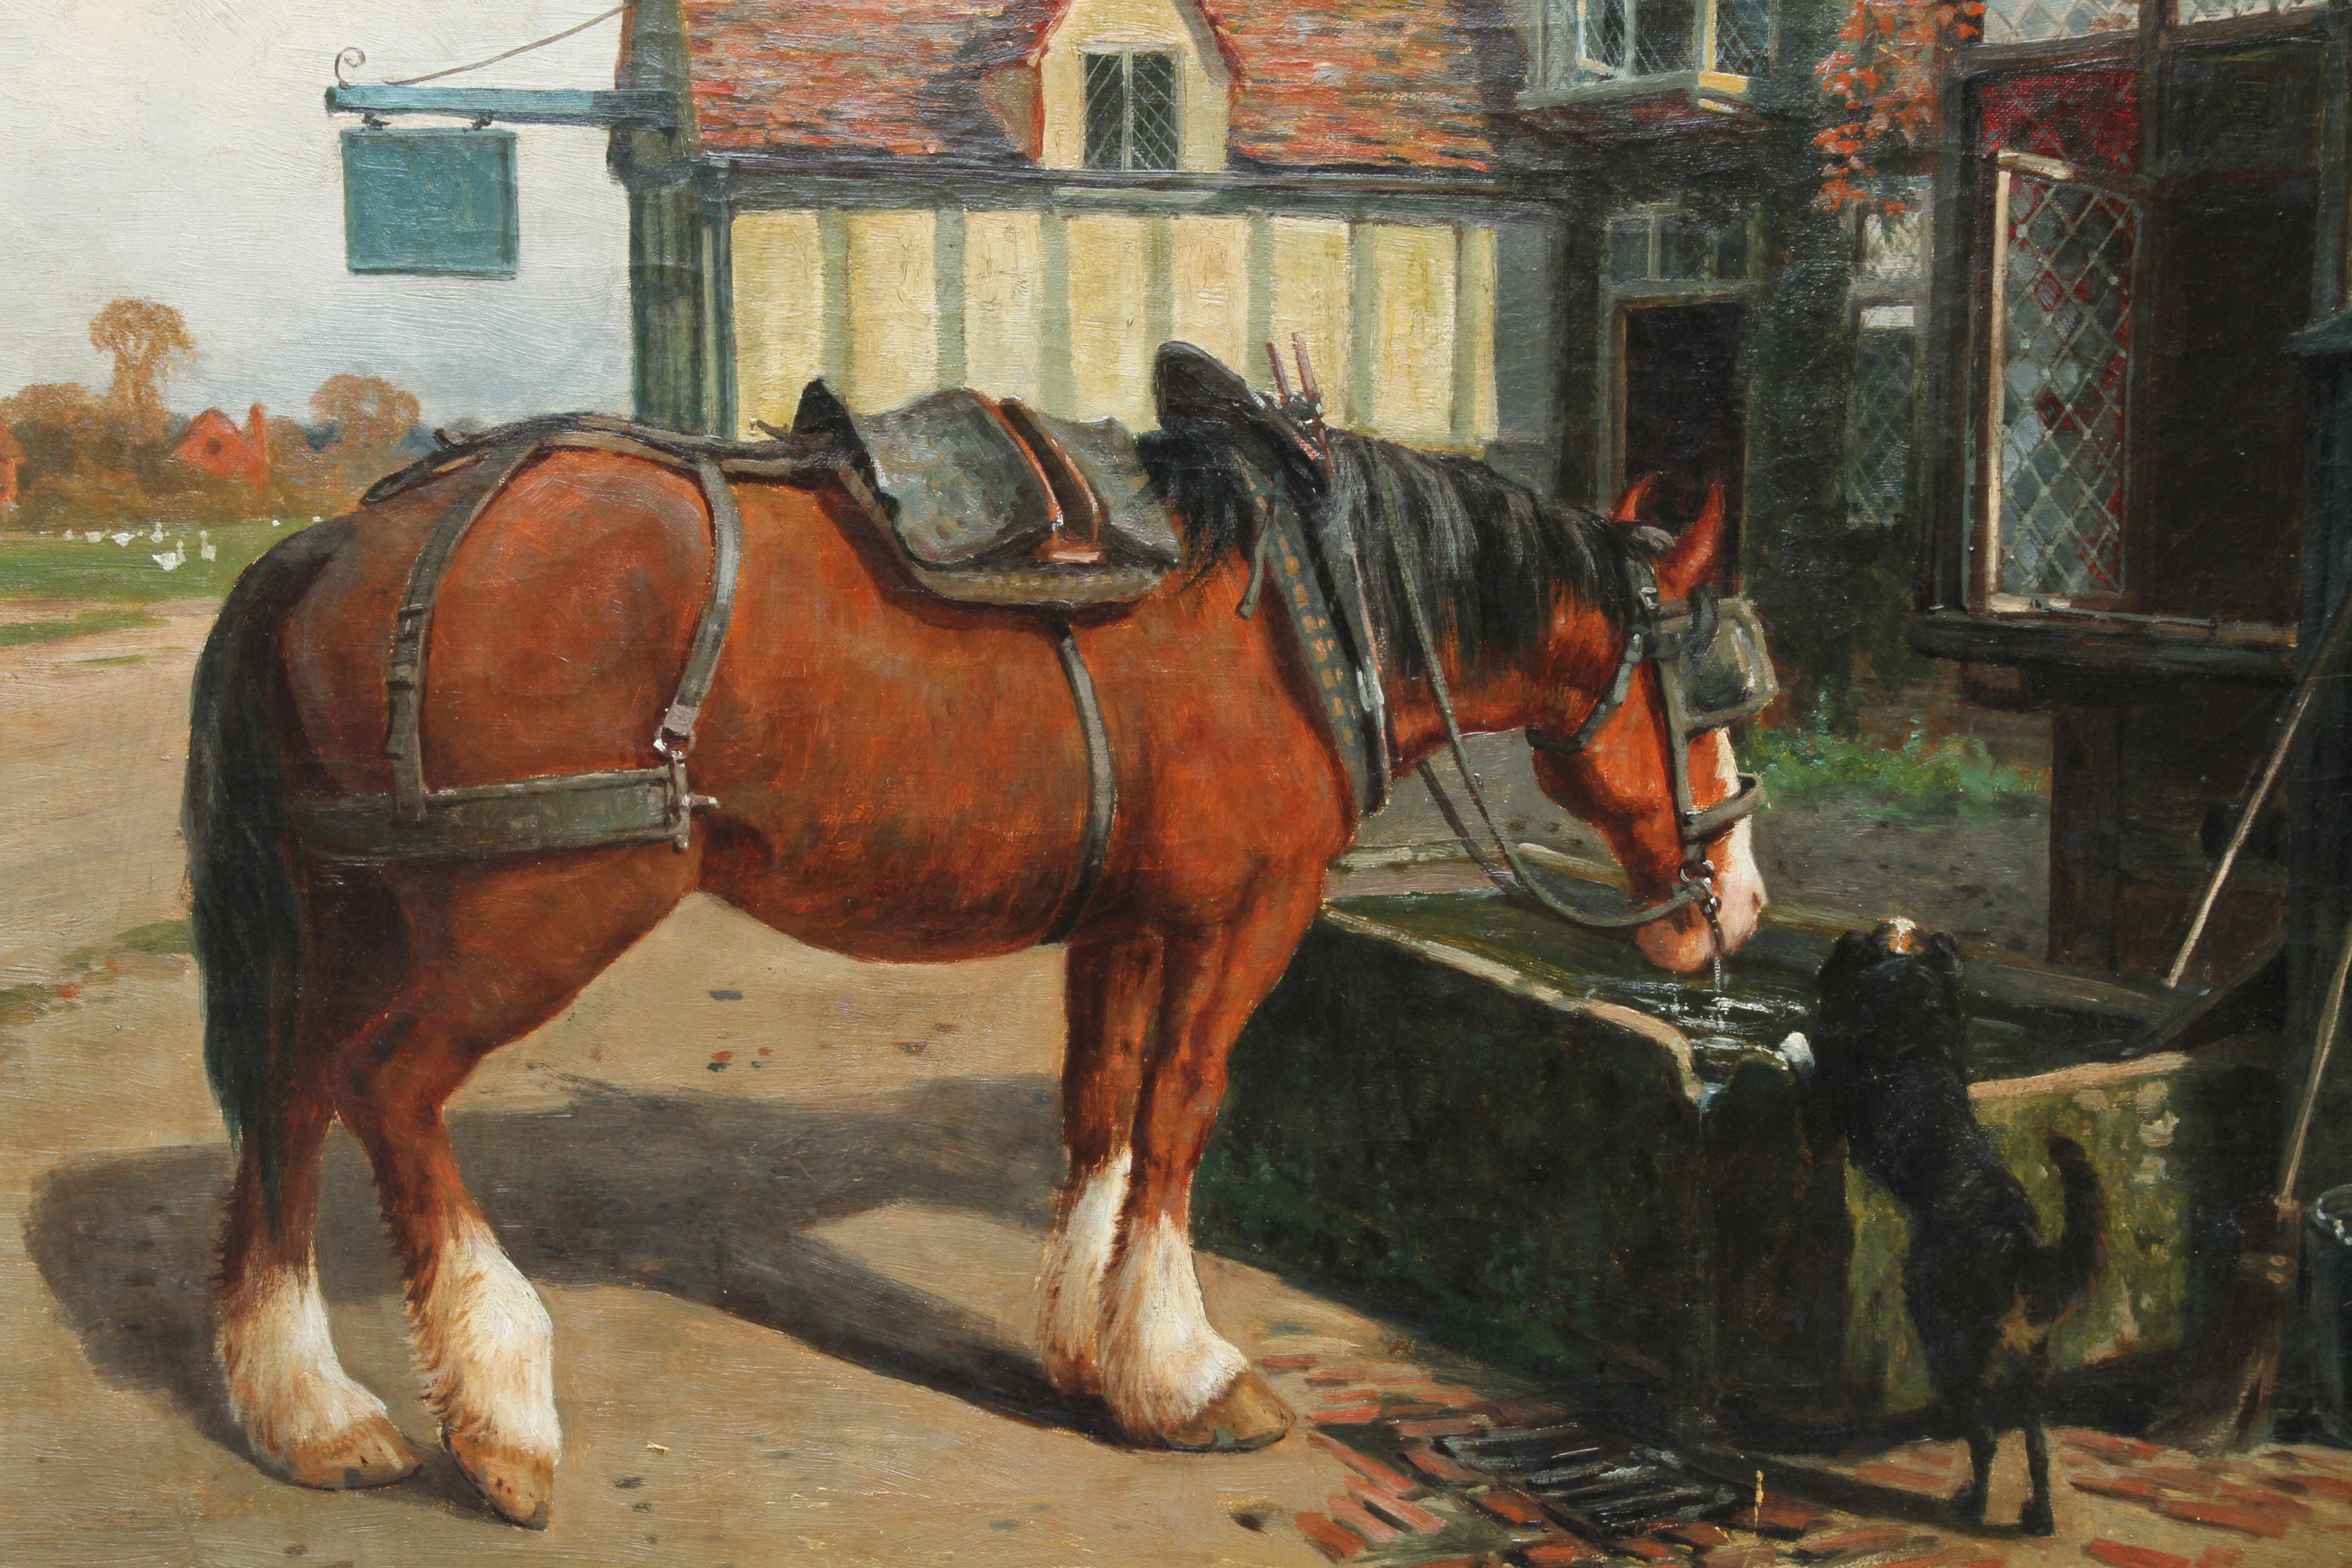 Cette charmante peinture à l'huile de genre victorienne est l'œuvre du célèbre artiste animalier Arthur William Redgate. Peinte vers 1900, la scène représente un cheval de ferme s'abreuvant à un abreuvoir à l'extérieur d'une taverne, sous le regard